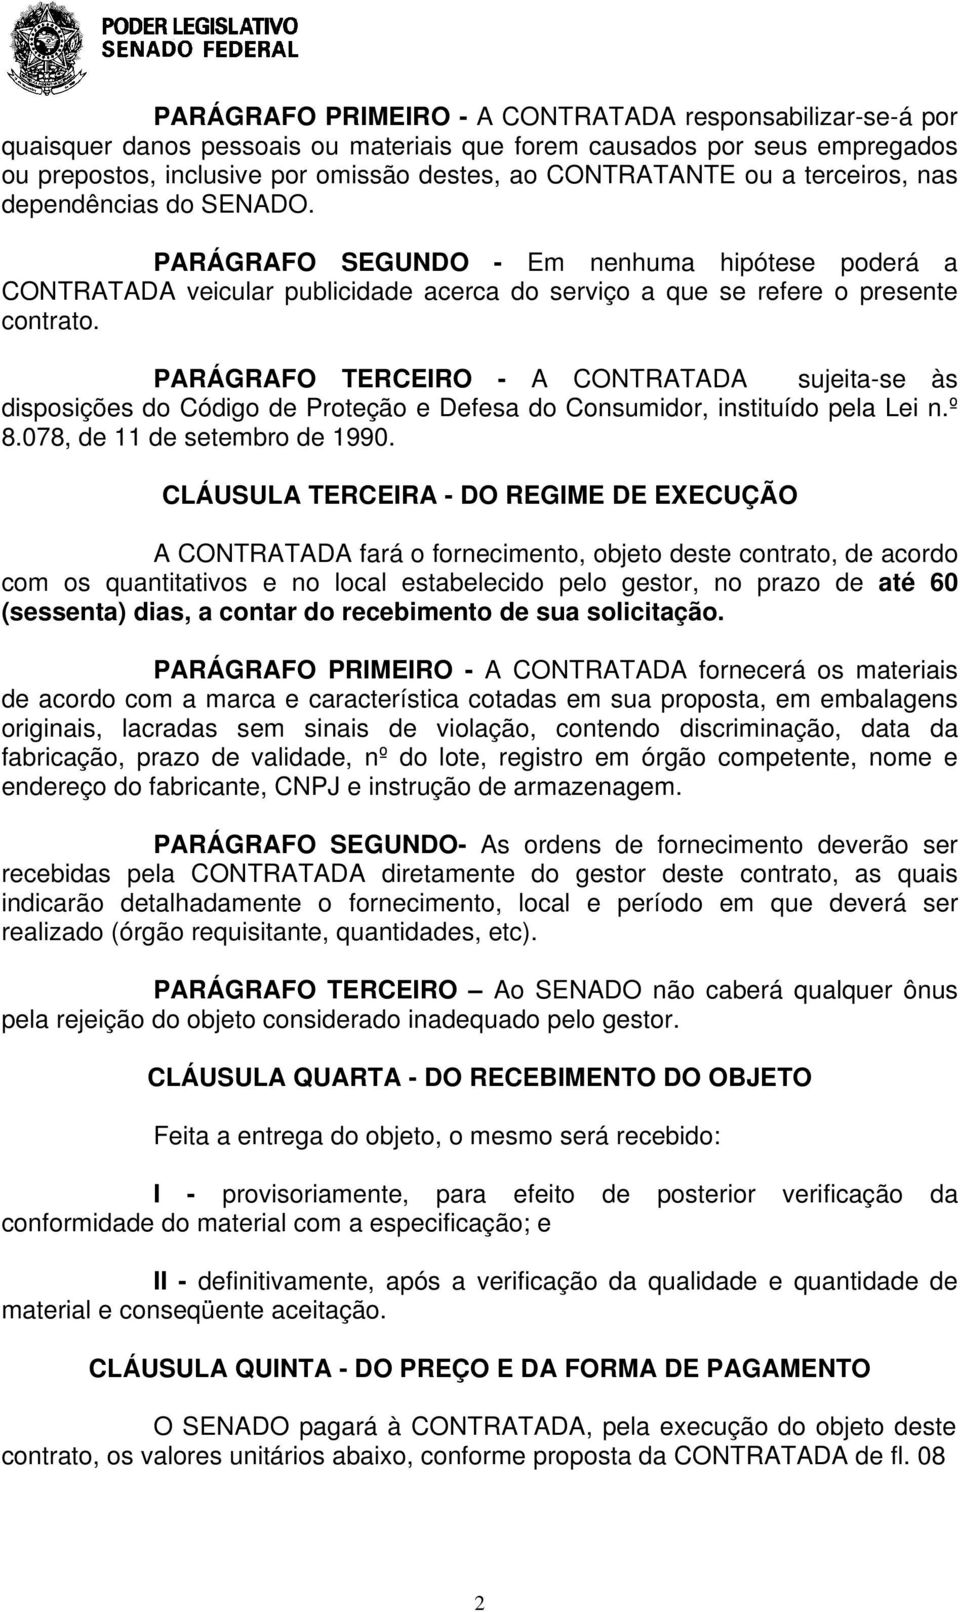 PARÁGRAFO TERCEIRO - A CONTRATADA sujeita-se às disposições do Código de Proteção e Defesa do Consumidor, instituído pela Lei n.º 8.078, de 11 de setembro de 1990.